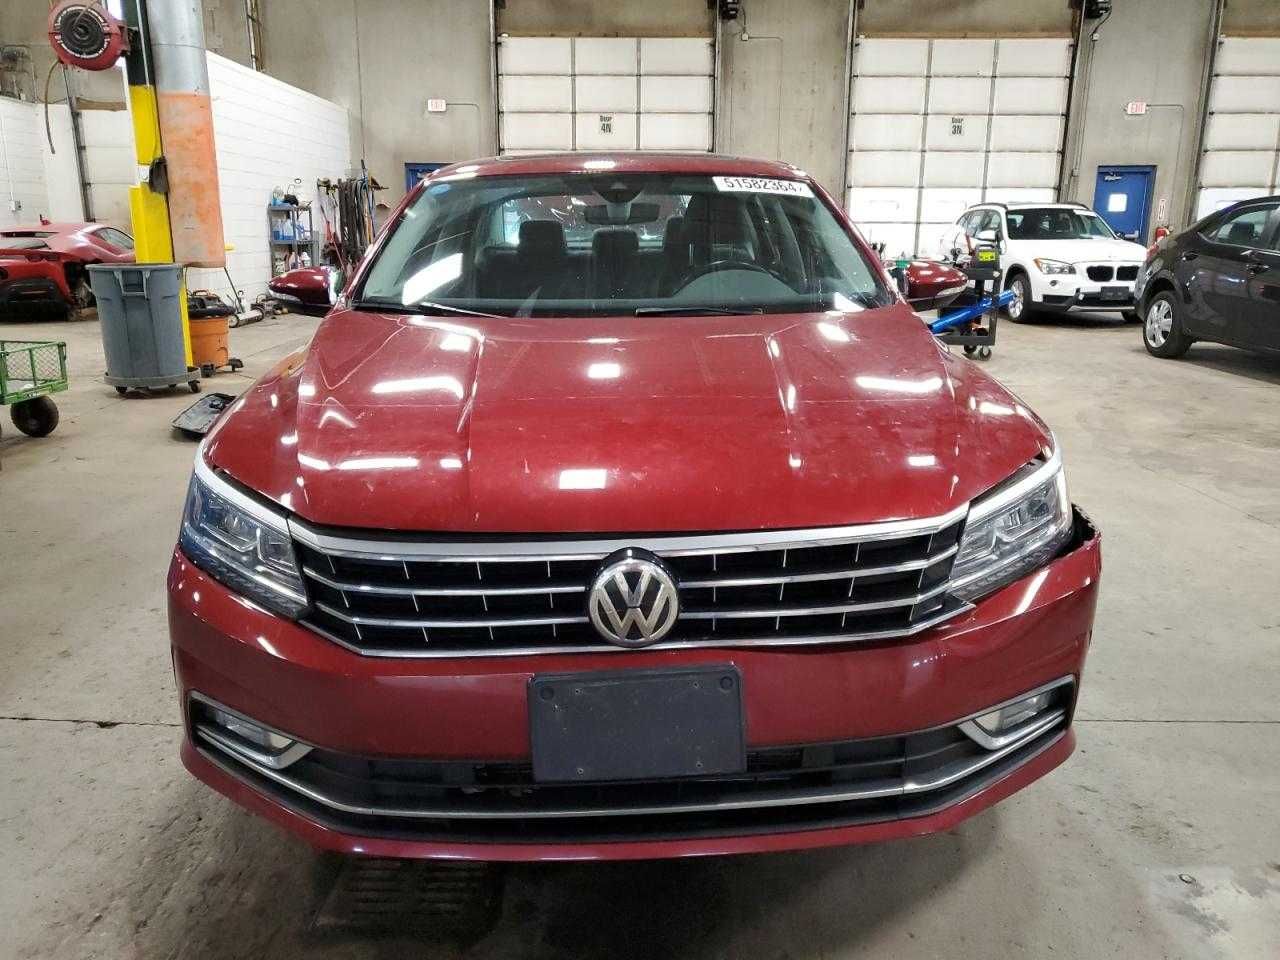 Volkswagen Passat Sel 2016